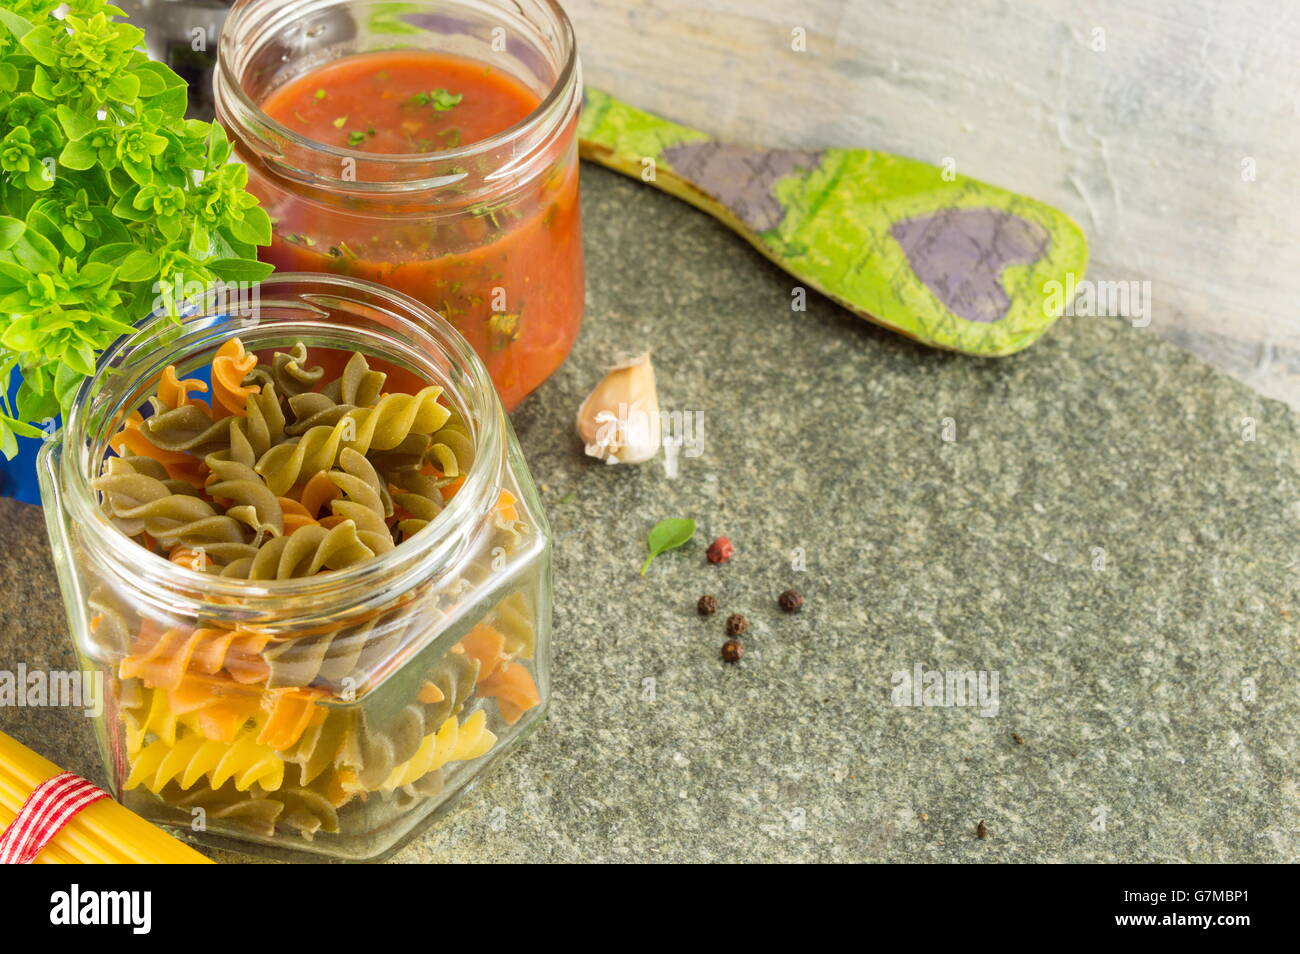 Hacer Pasta ingredientes en recipientes en una mesa de piedra Foto de stock